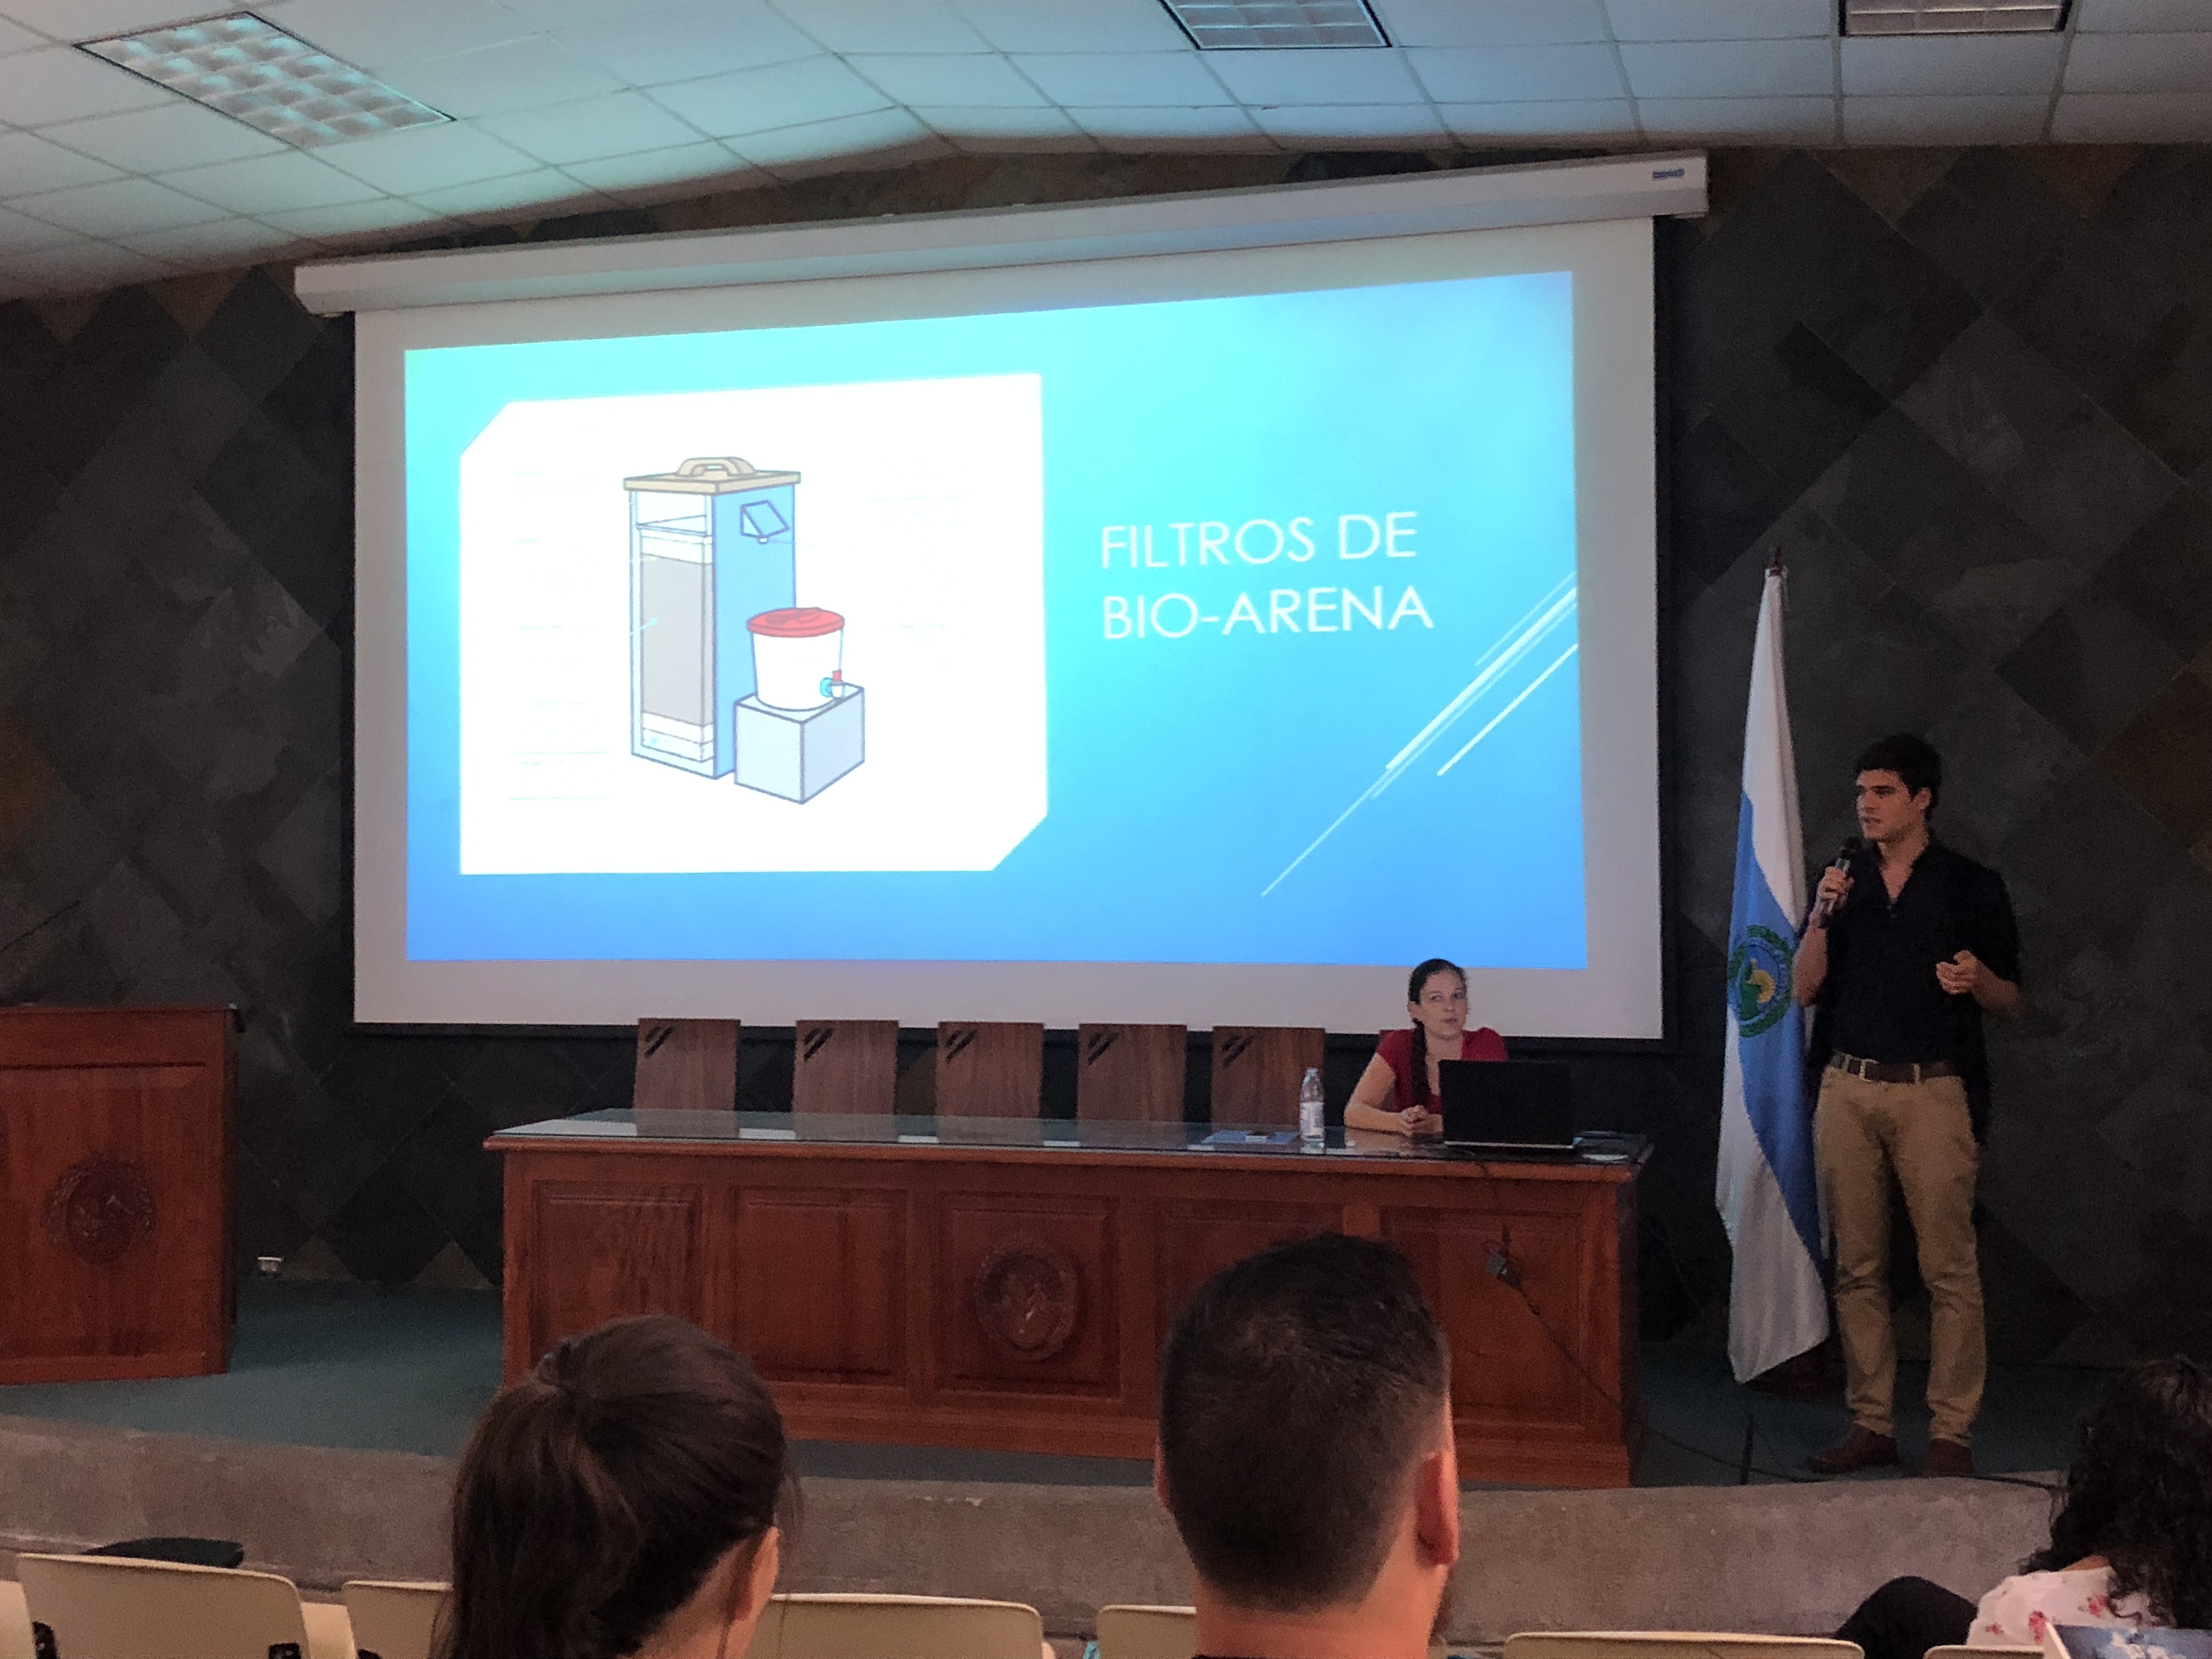 img-noticia-Estudiantes presentan el prototipo del filtro de bioarena construido en la comunidad de Caletas. Foto por: Leonardo Garita Alvarado